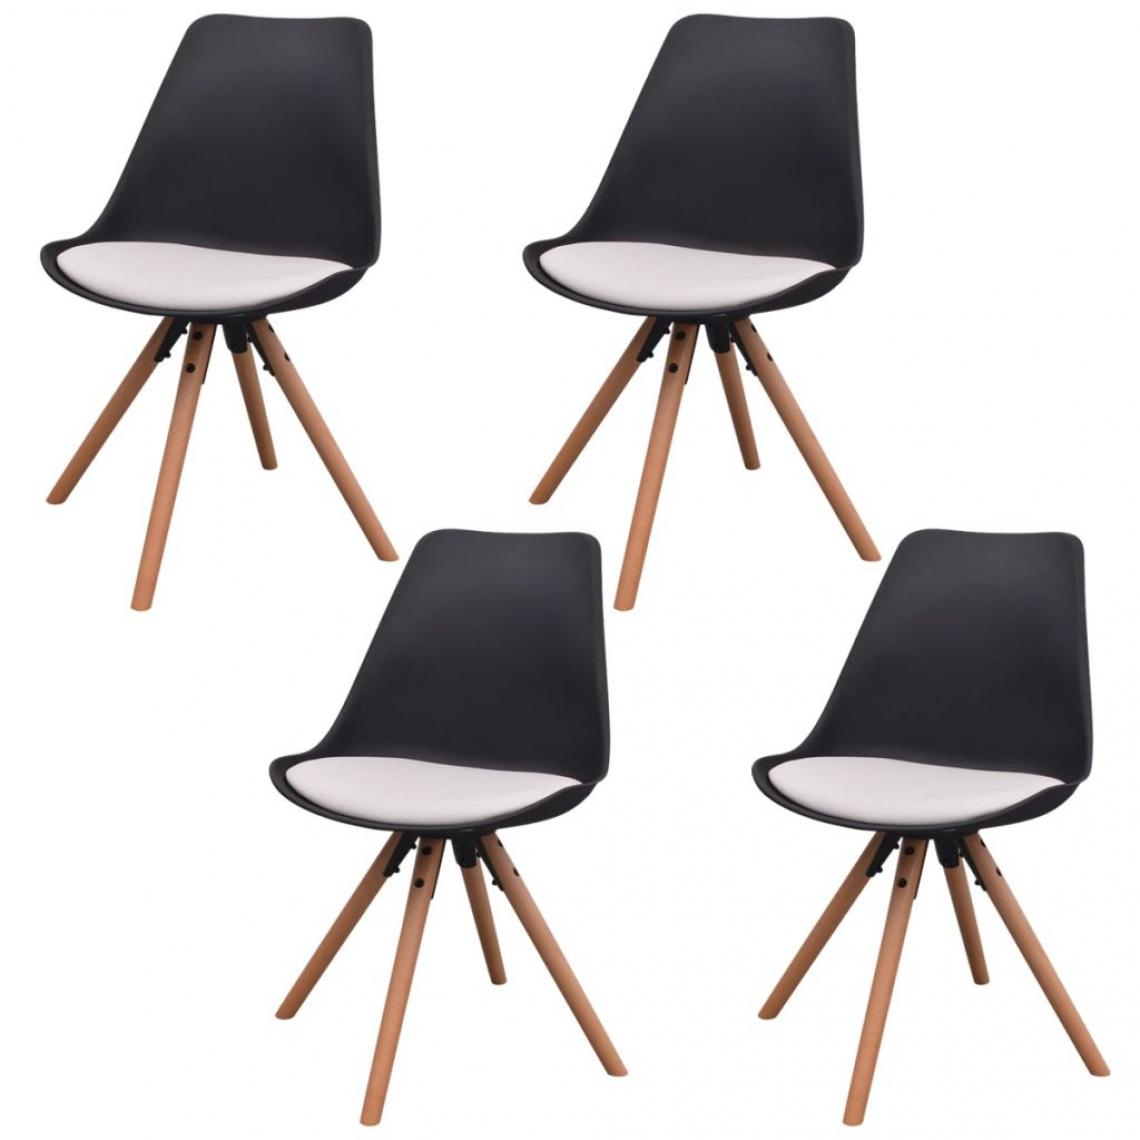 Decoshop26 - Lot de 4 chaises de salle à manger cuisine design rétro similicuir noir et blanc CDS021786 - Chaises